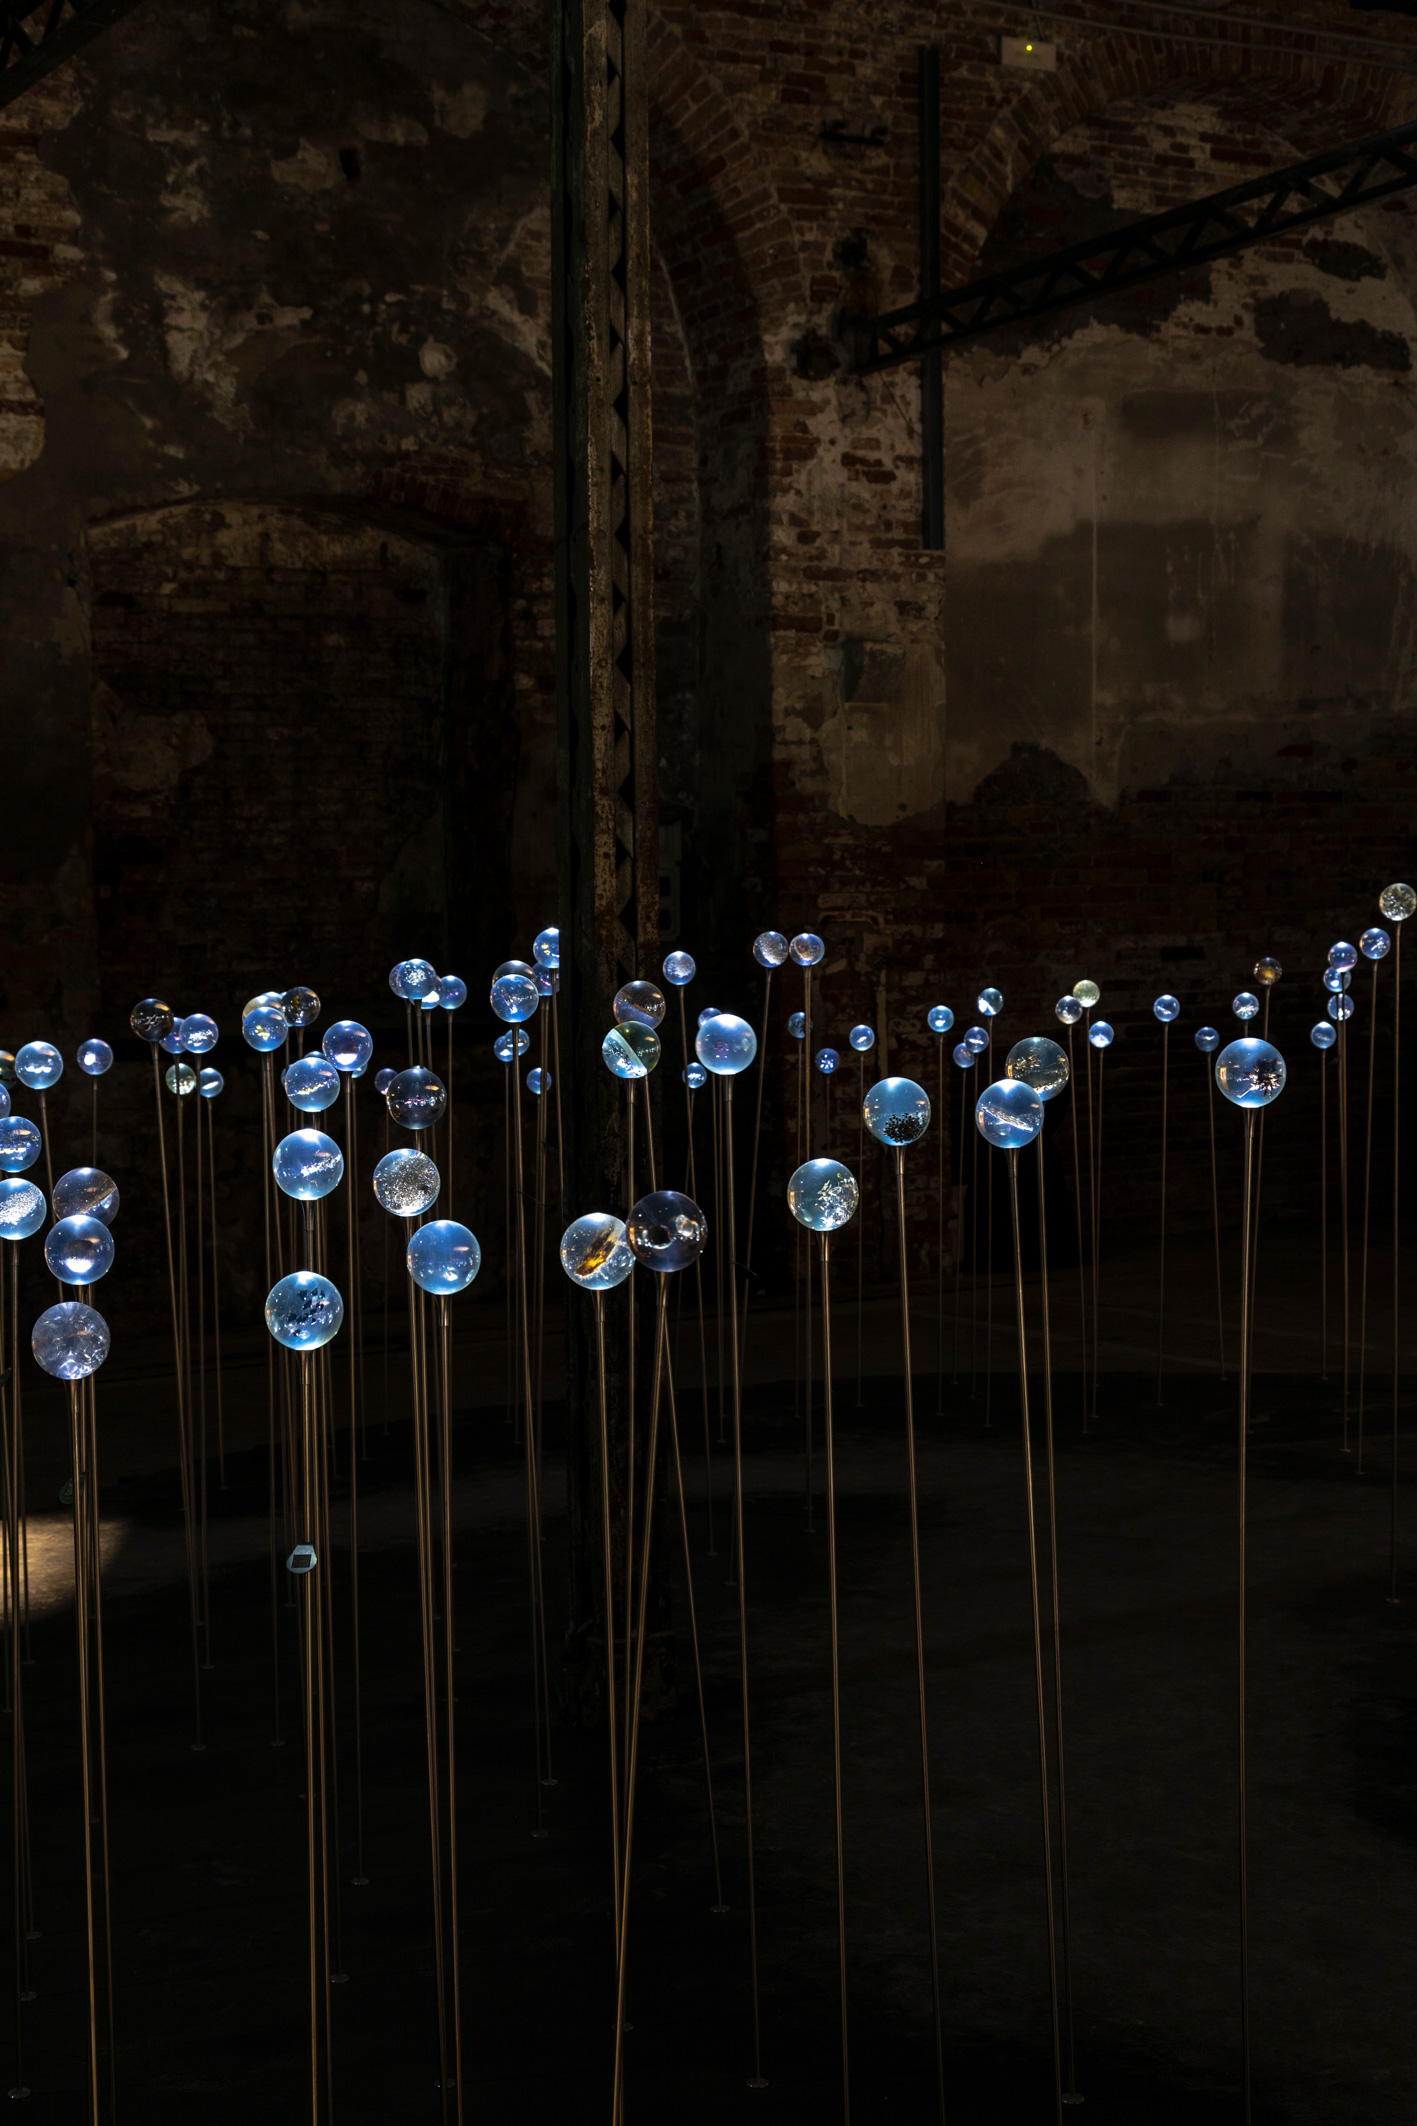 18. Mostra Internazionale di Architettura - La Biennale di Venezia, The laboratory of the Future | PH: Marco Zorzanello | Courtesy: La Biennale di Venezia